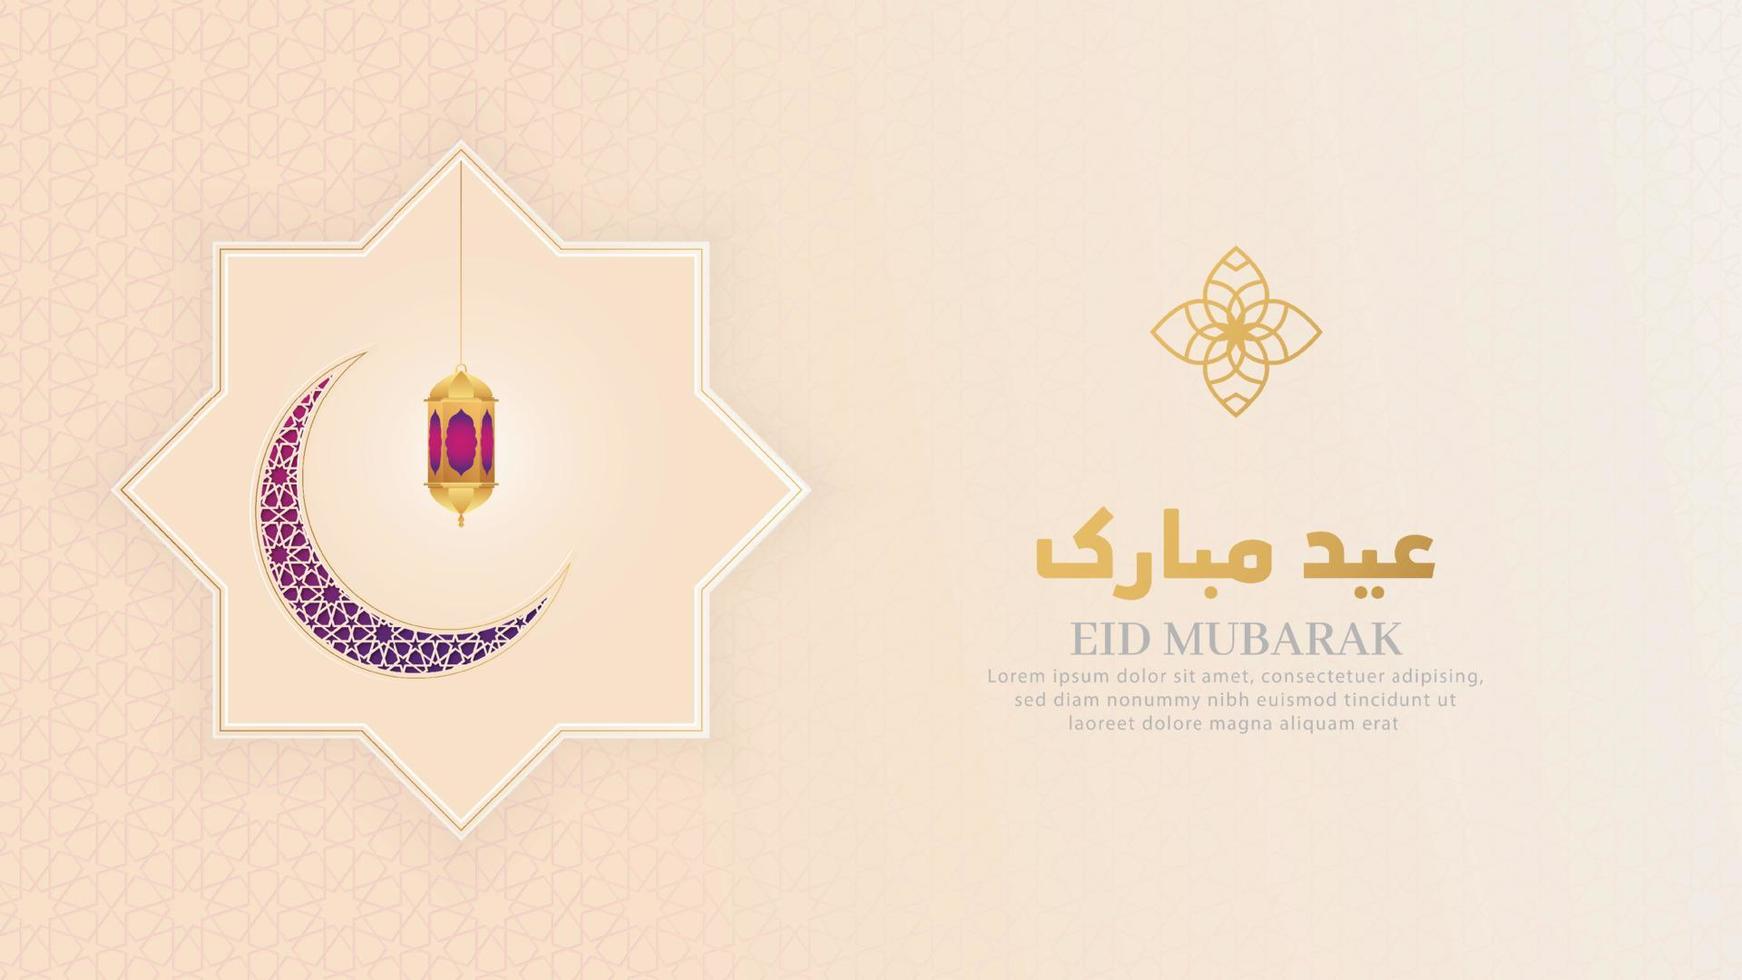 eid mubarak islâmica de fundo padrão de luxo branco com estrelas da lua crescente e lanternas ornamentais vetor